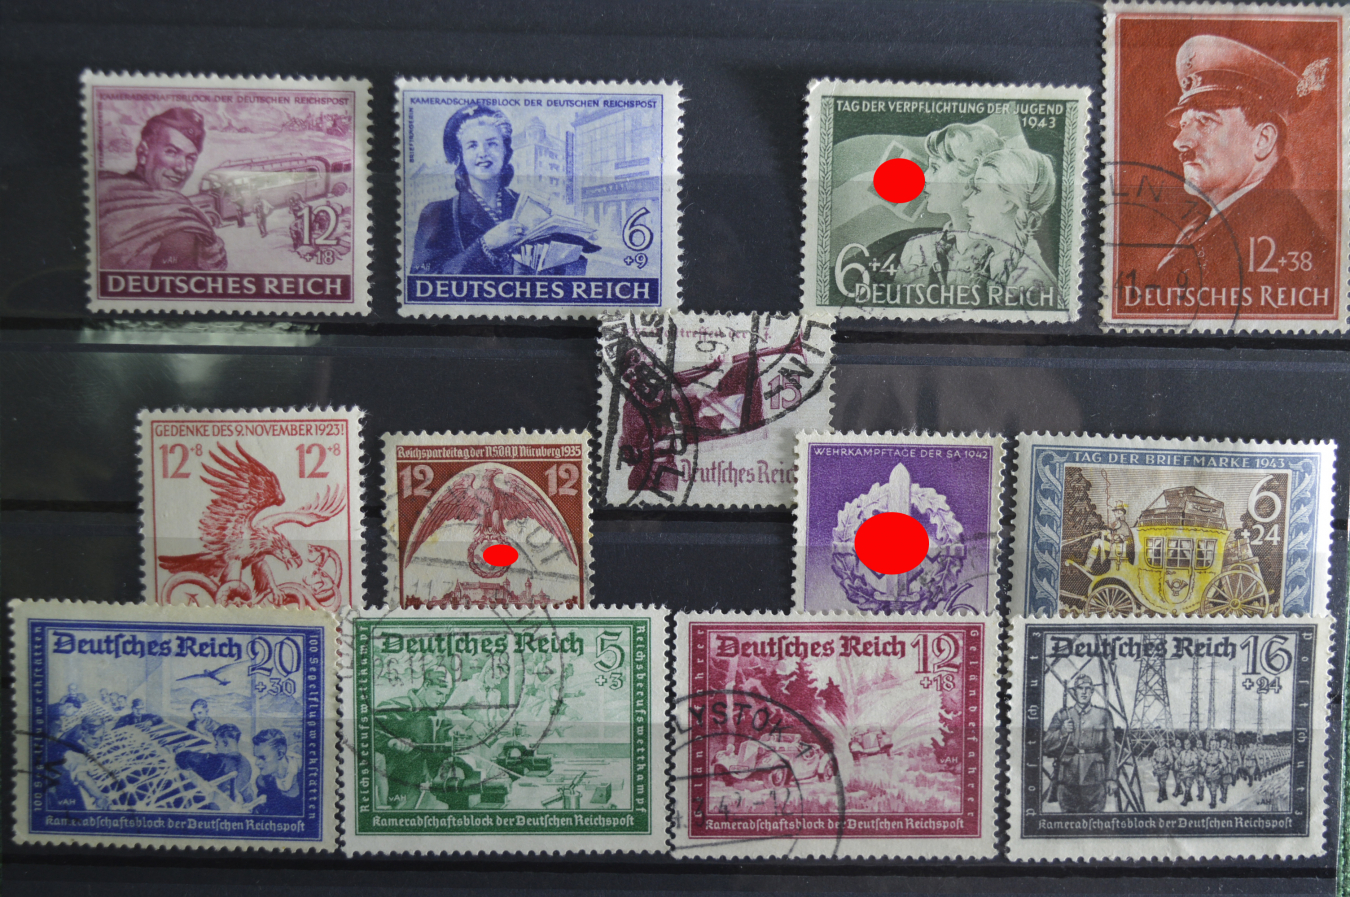 Купить марки германии. Почтовая марка Deutsches Reich. Немецкие почтовые марки третьего рейха. Почтовая марка Deutsches Reich 3. Германия 3- й Рейх 1938 марки.